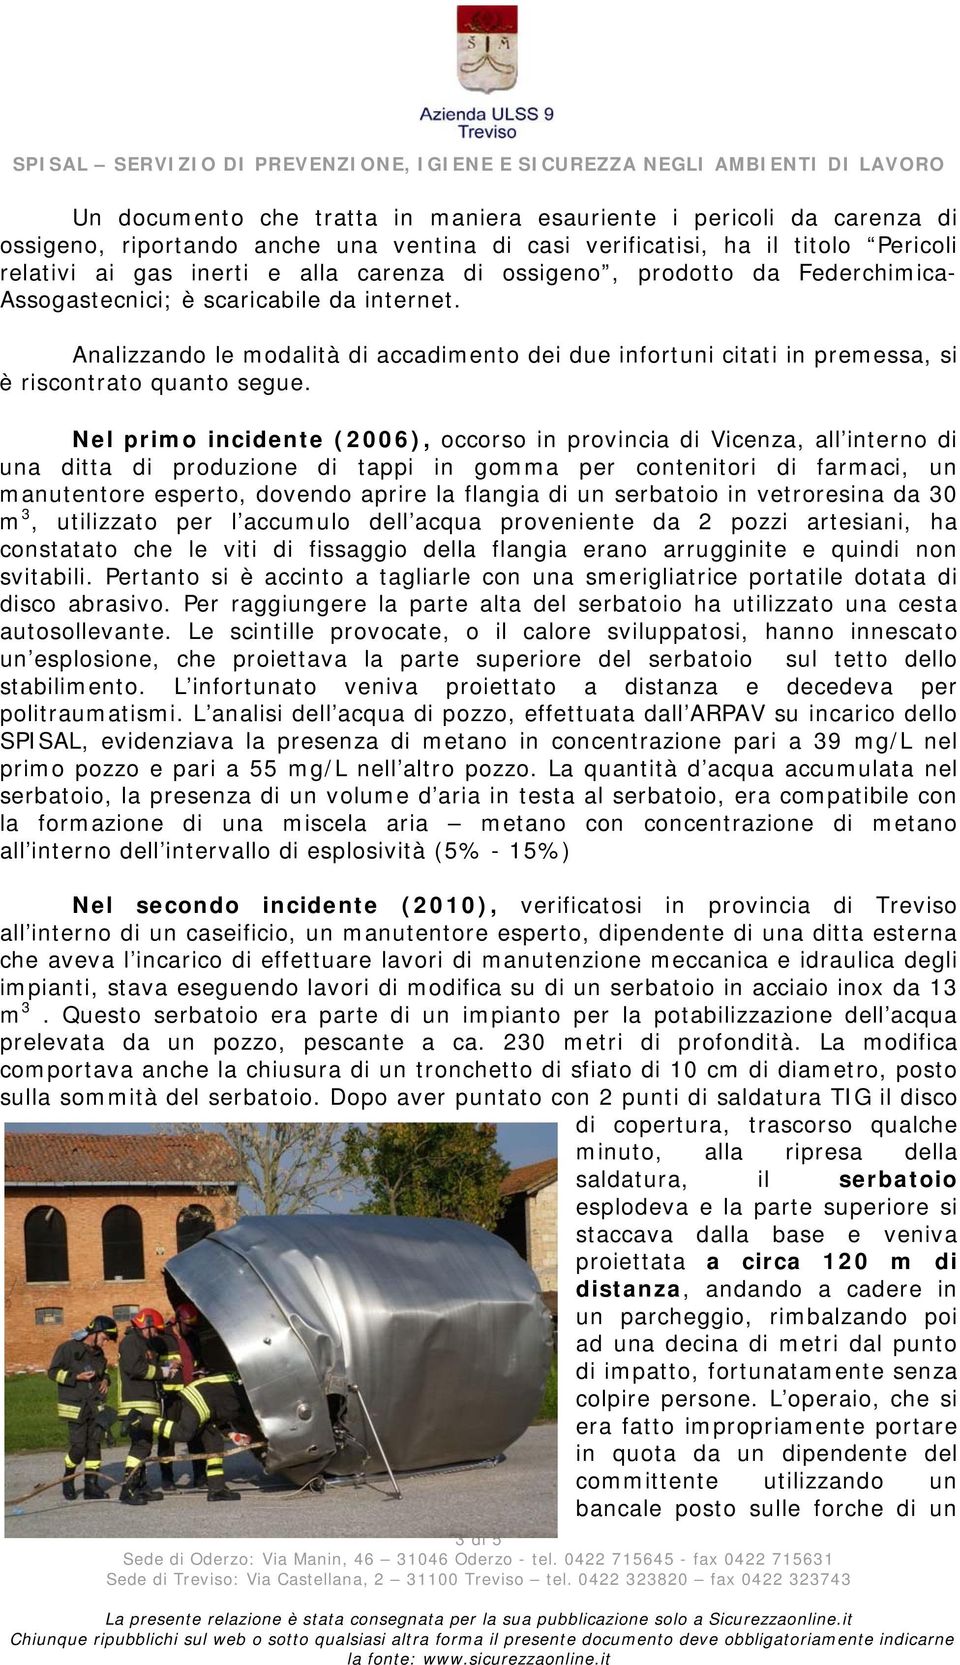 Nel primo incidente (2006), occorso in provincia di Vicenza, all interno di una ditta di produzione di tappi in gomma per contenitori di farmaci, un manutentore esperto, dovendo aprire la flangia di